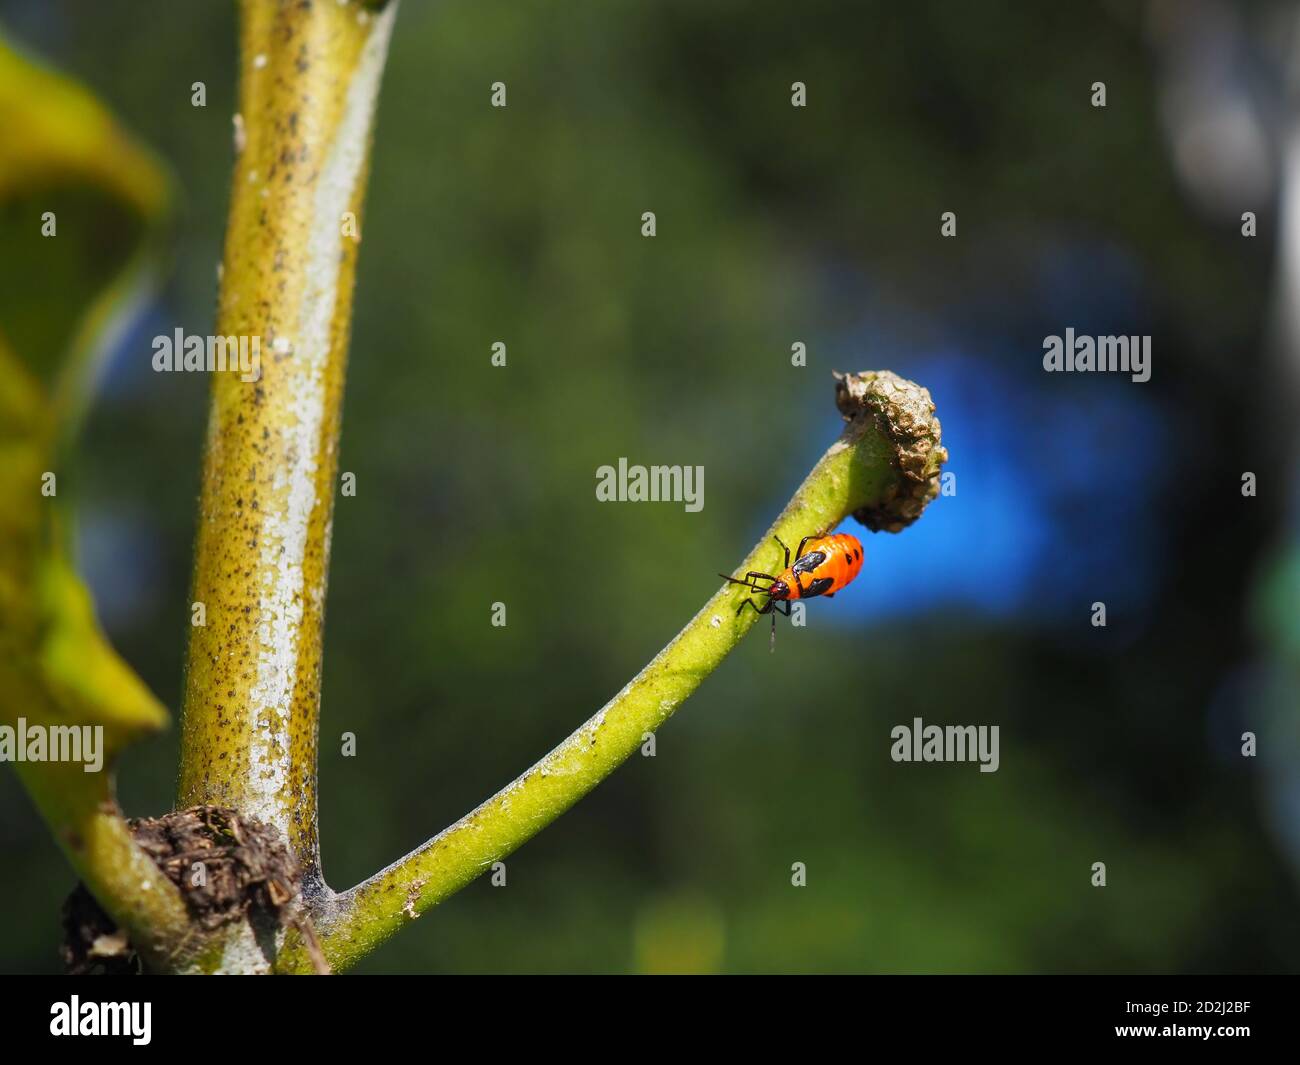 Un gros insecte nymphe orange et noir dans le 5e stade de développement du cycle de vie, reposant sur une tige de milkweed appauvrie. Banque D'Images